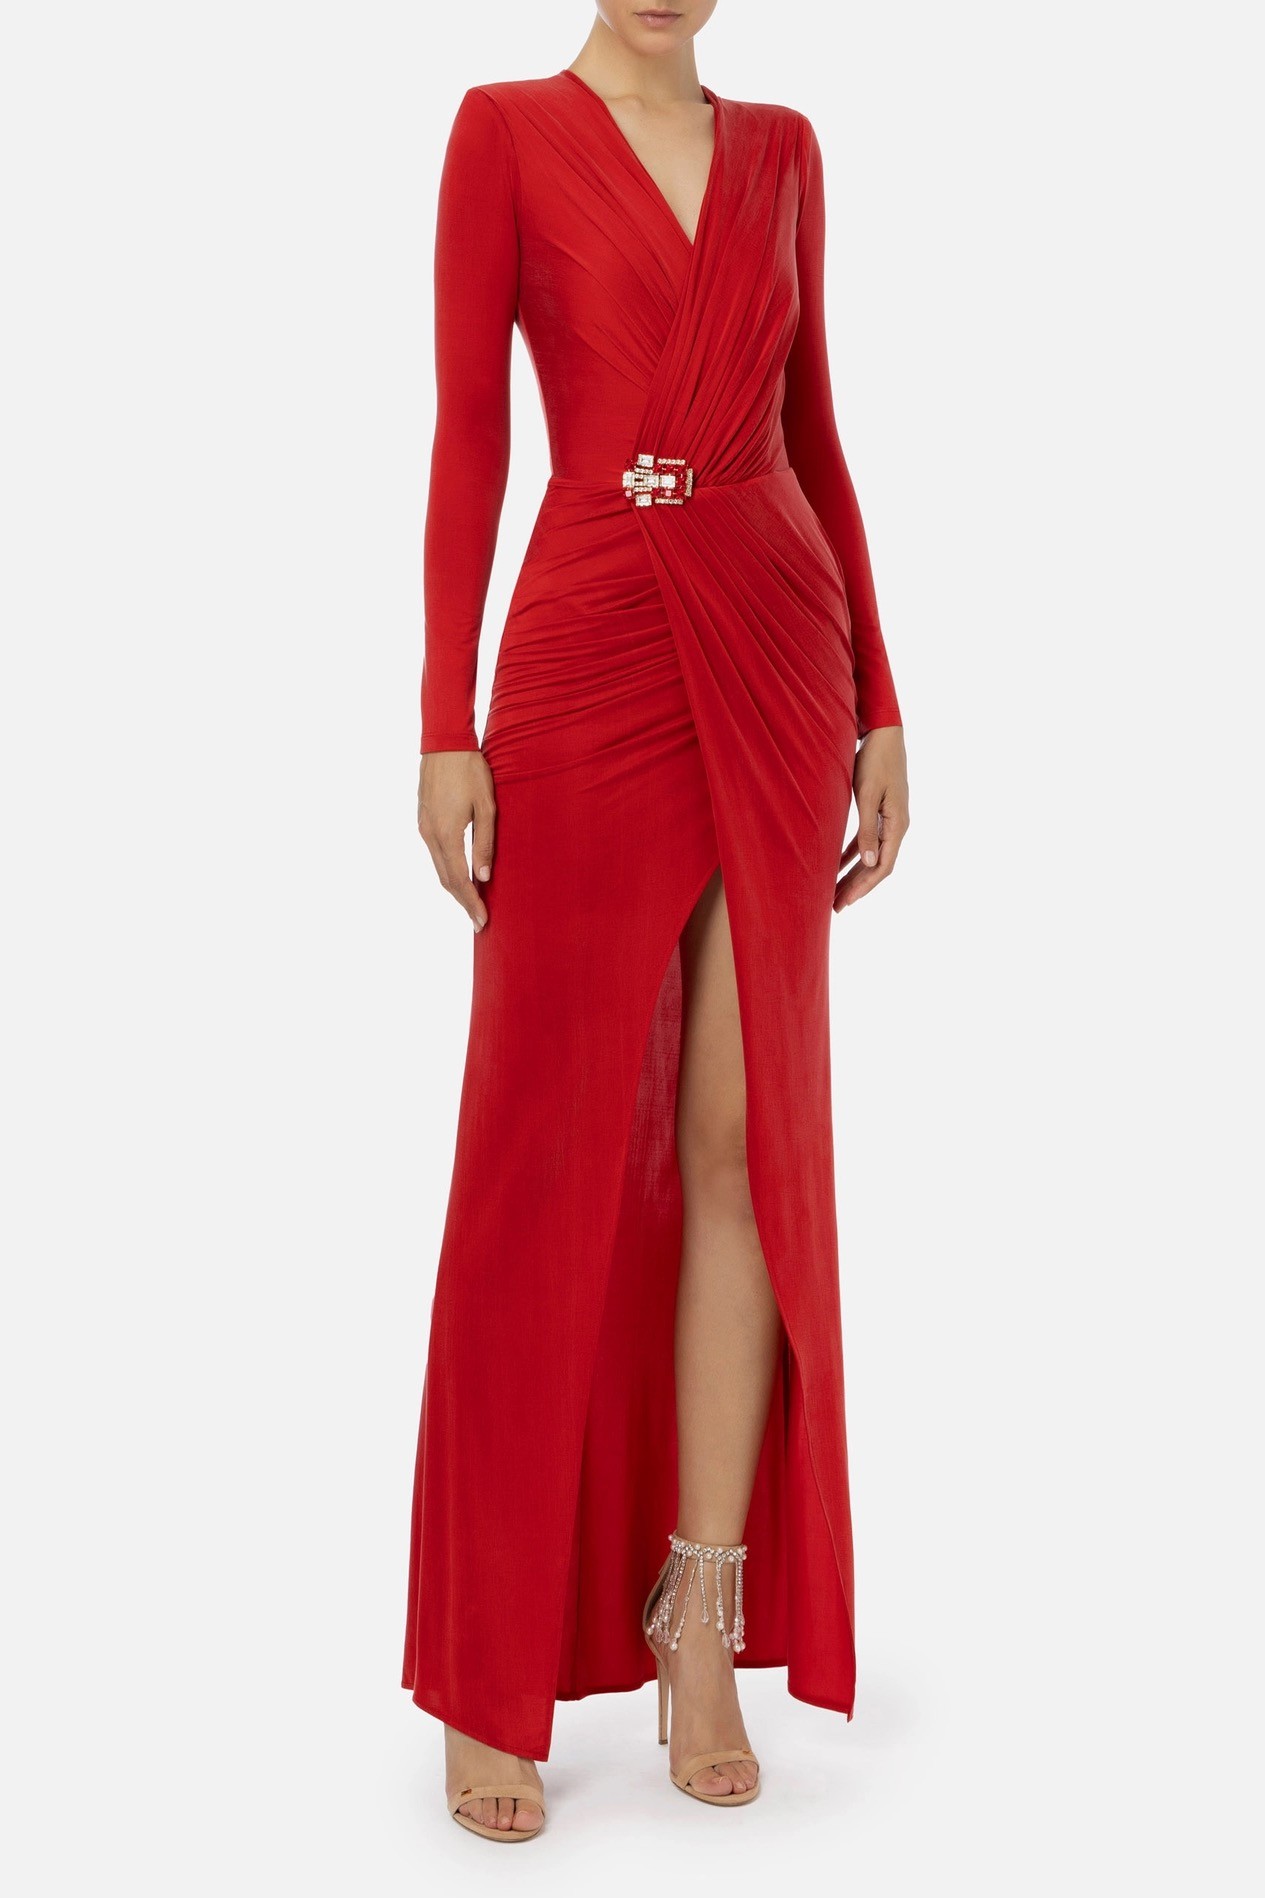  إليزابيتا فرانشي - فستان Red Carpet مصنوع من جيرسي كوبرو مع إكسسوار - أحمر